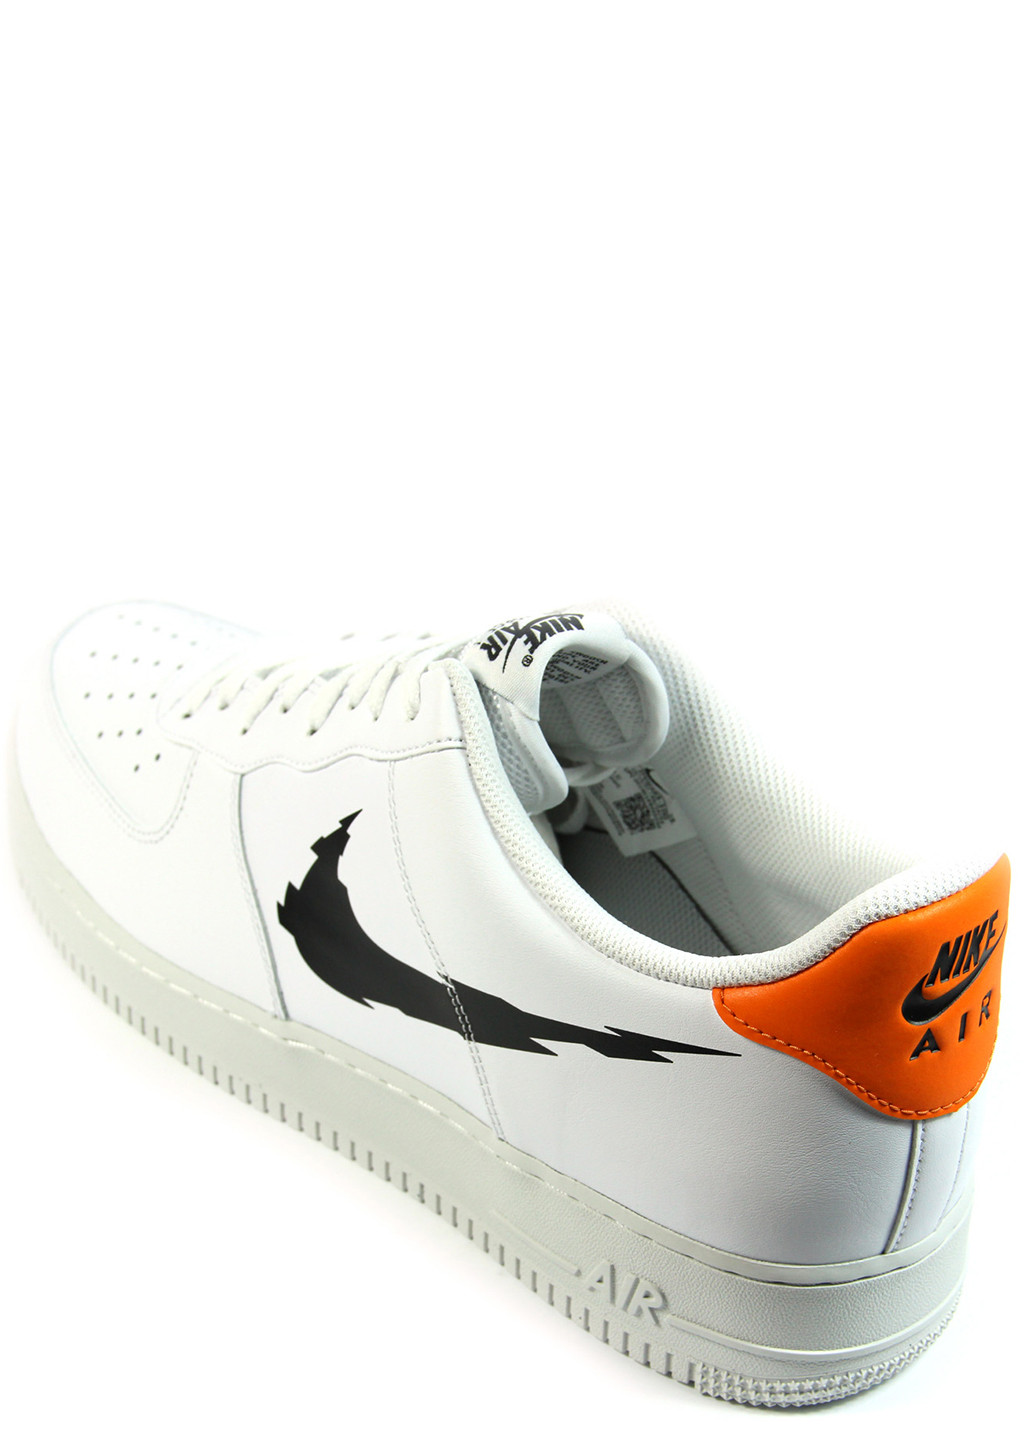 Белые демисезонные мужские кроссовки air force 1 glitch swoosh m dv6483-100 Nike